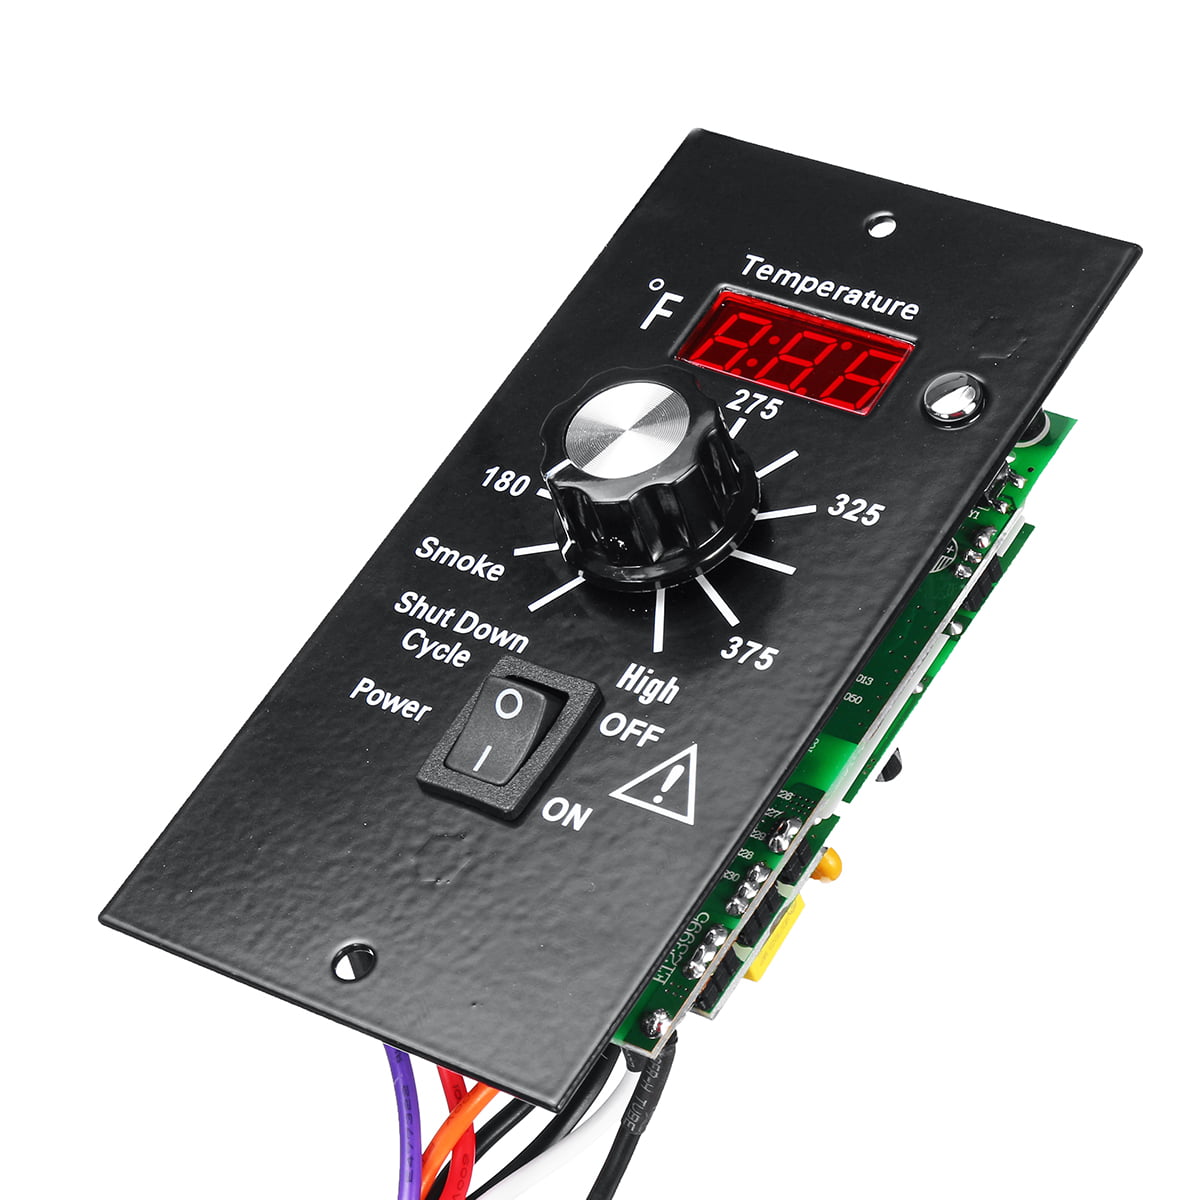 Digital Thermostat Control Board Probe für Traeger Wood Pellet Grills #BAC236 